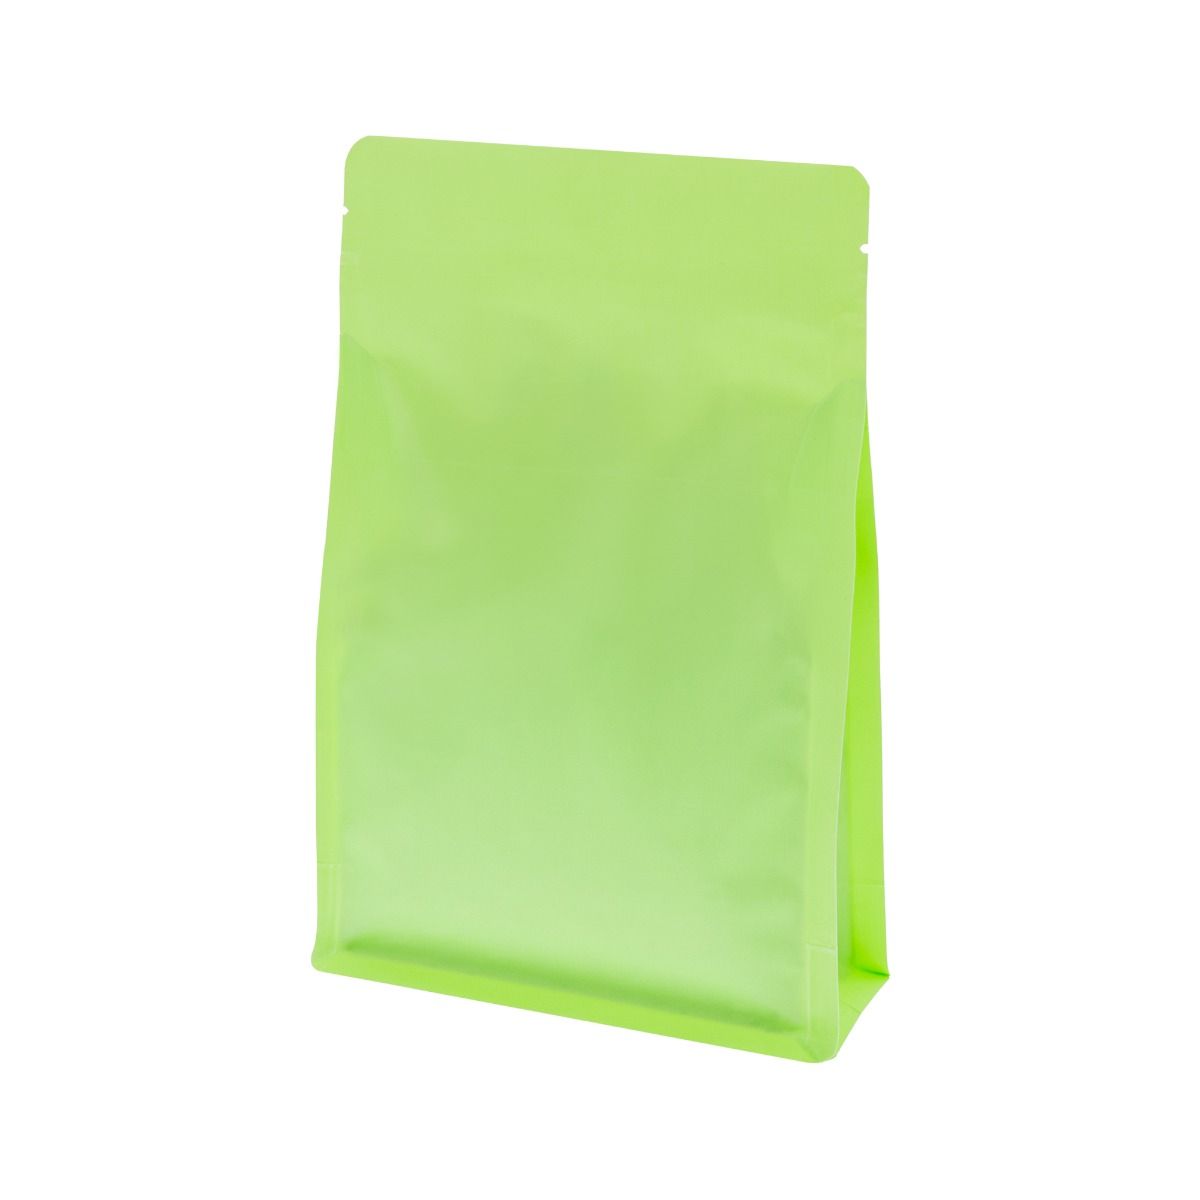 Flachbodenbeutel mit Zip-verschluss - matt grün (100% recycelbar)